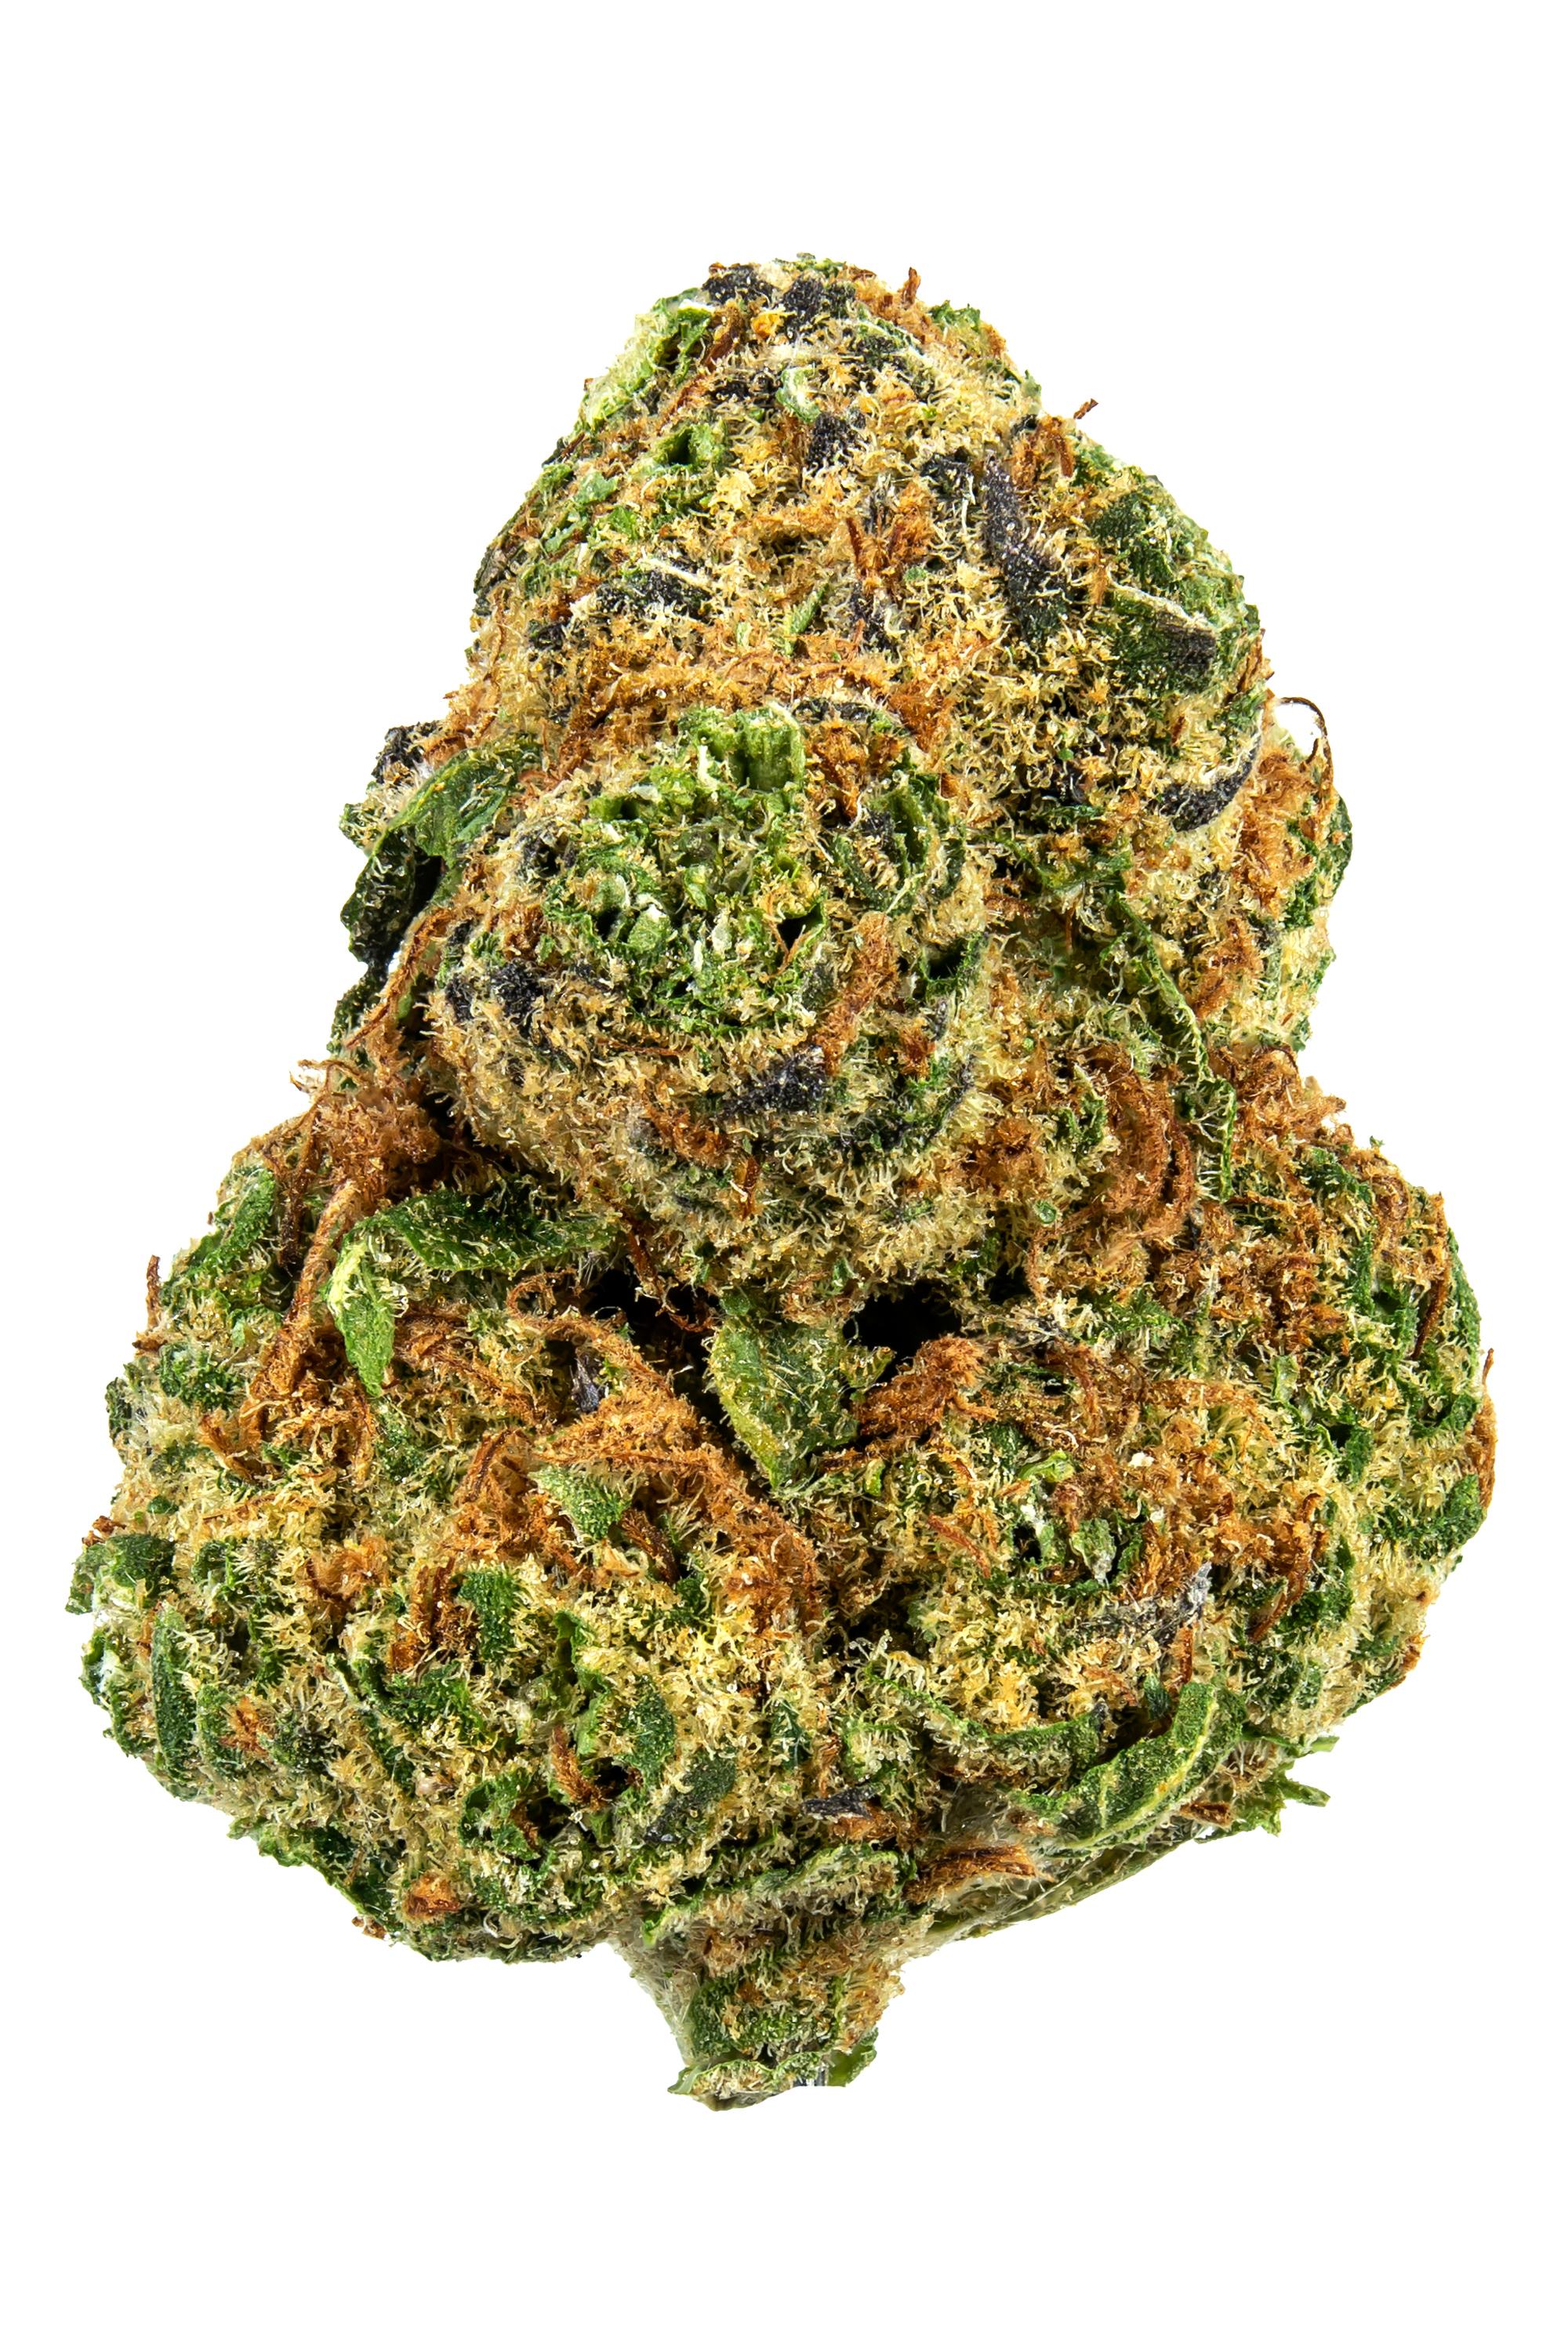 Goober - Hybrid Cannabis Strain